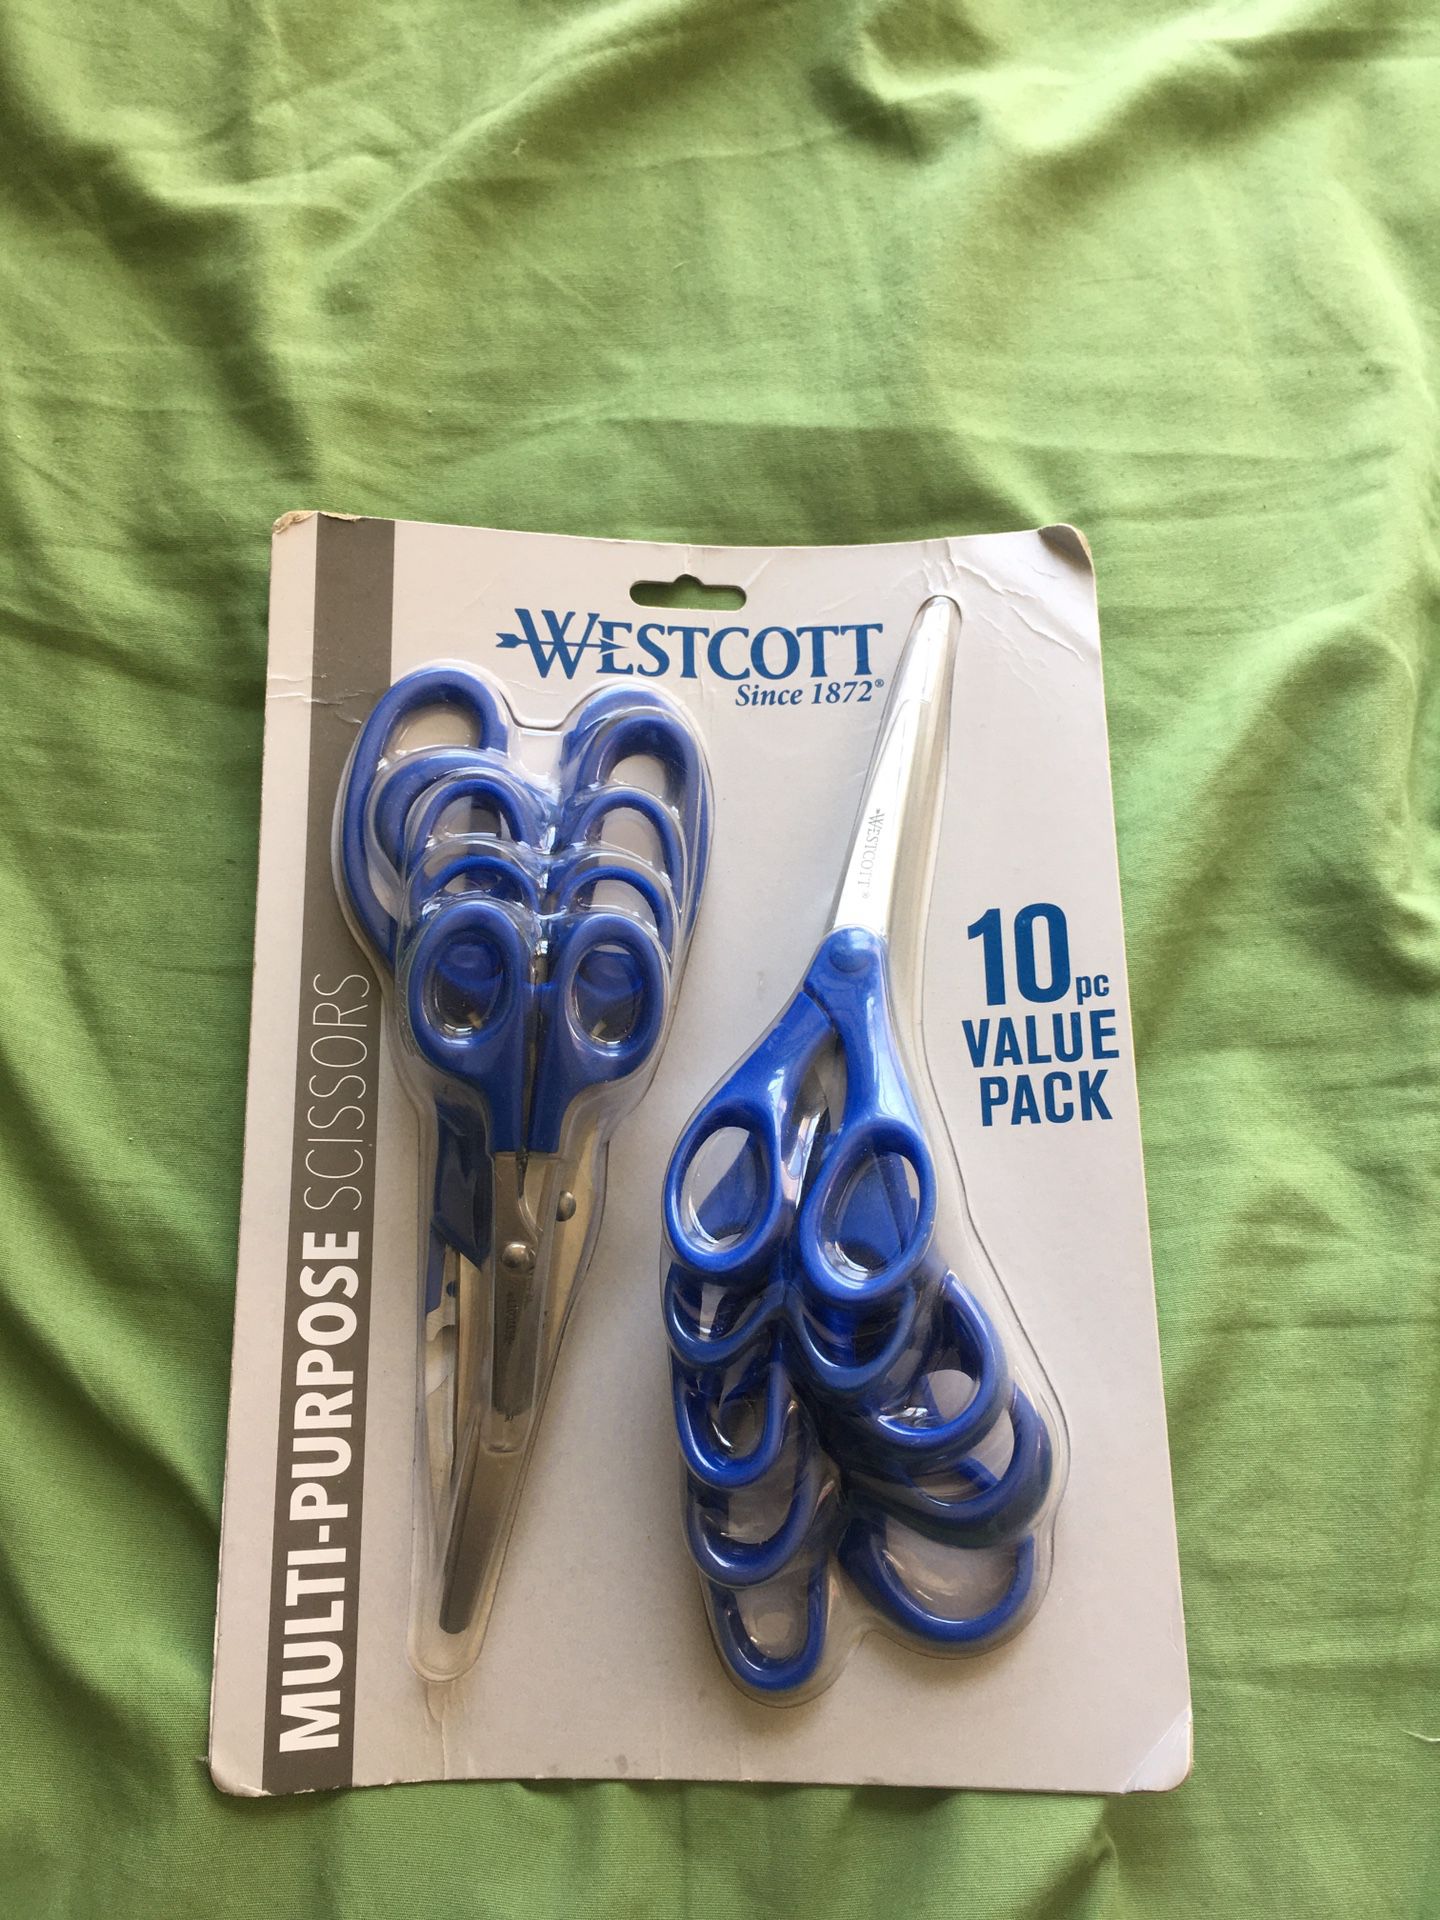 Brand new Westcott scissors